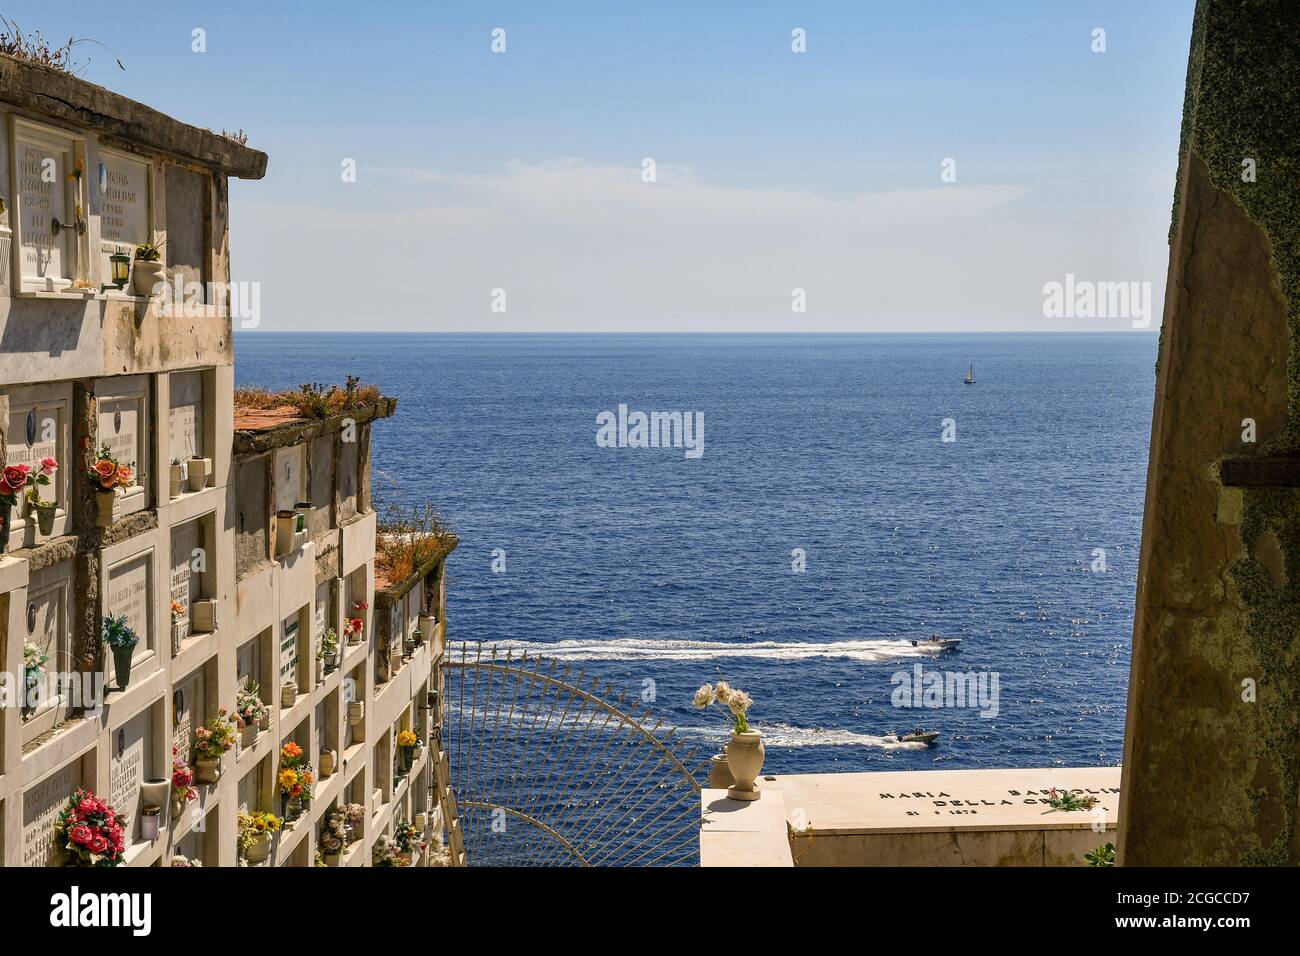 Nicchie nel cimitero che si affaccia sul mare con barche di passaggio in estate, Porto Venere, la Spezia, Liguria, Italia Foto Stock